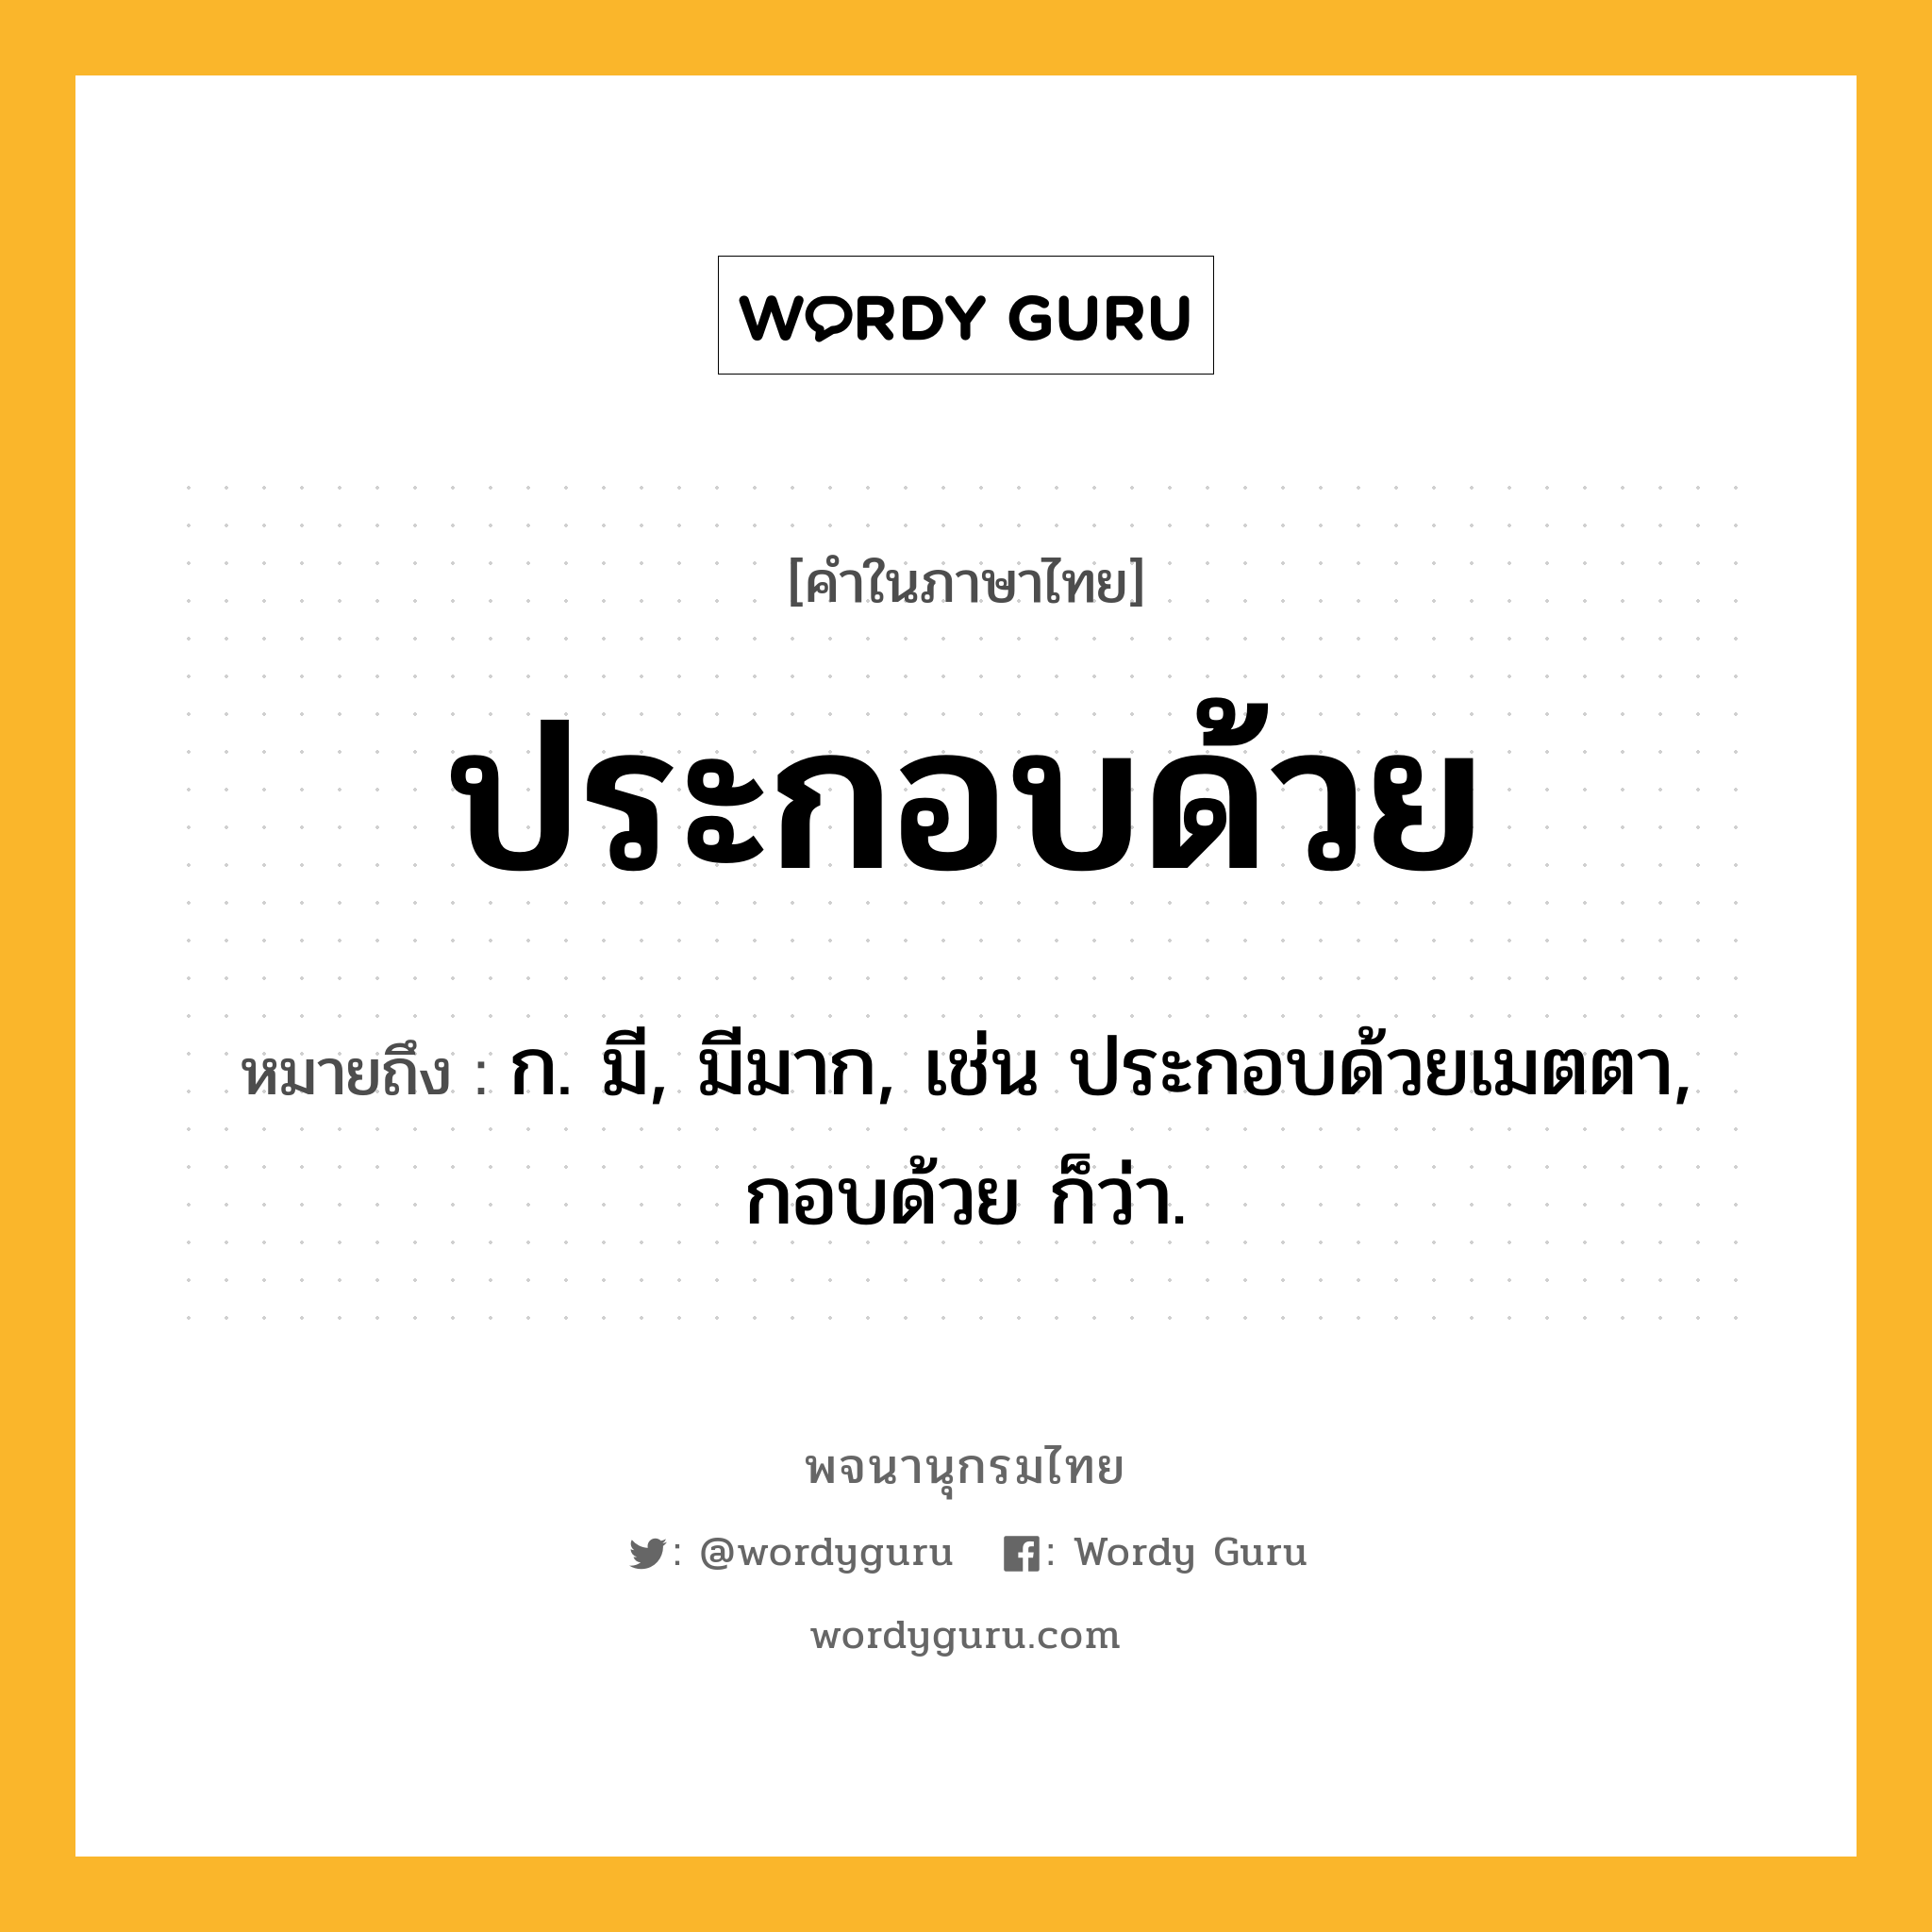 ประกอบด้วย หมายถึงอะไร?, คำในภาษาไทย ประกอบด้วย หมายถึง ก. มี, มีมาก, เช่น ประกอบด้วยเมตตา, กอบด้วย ก็ว่า.